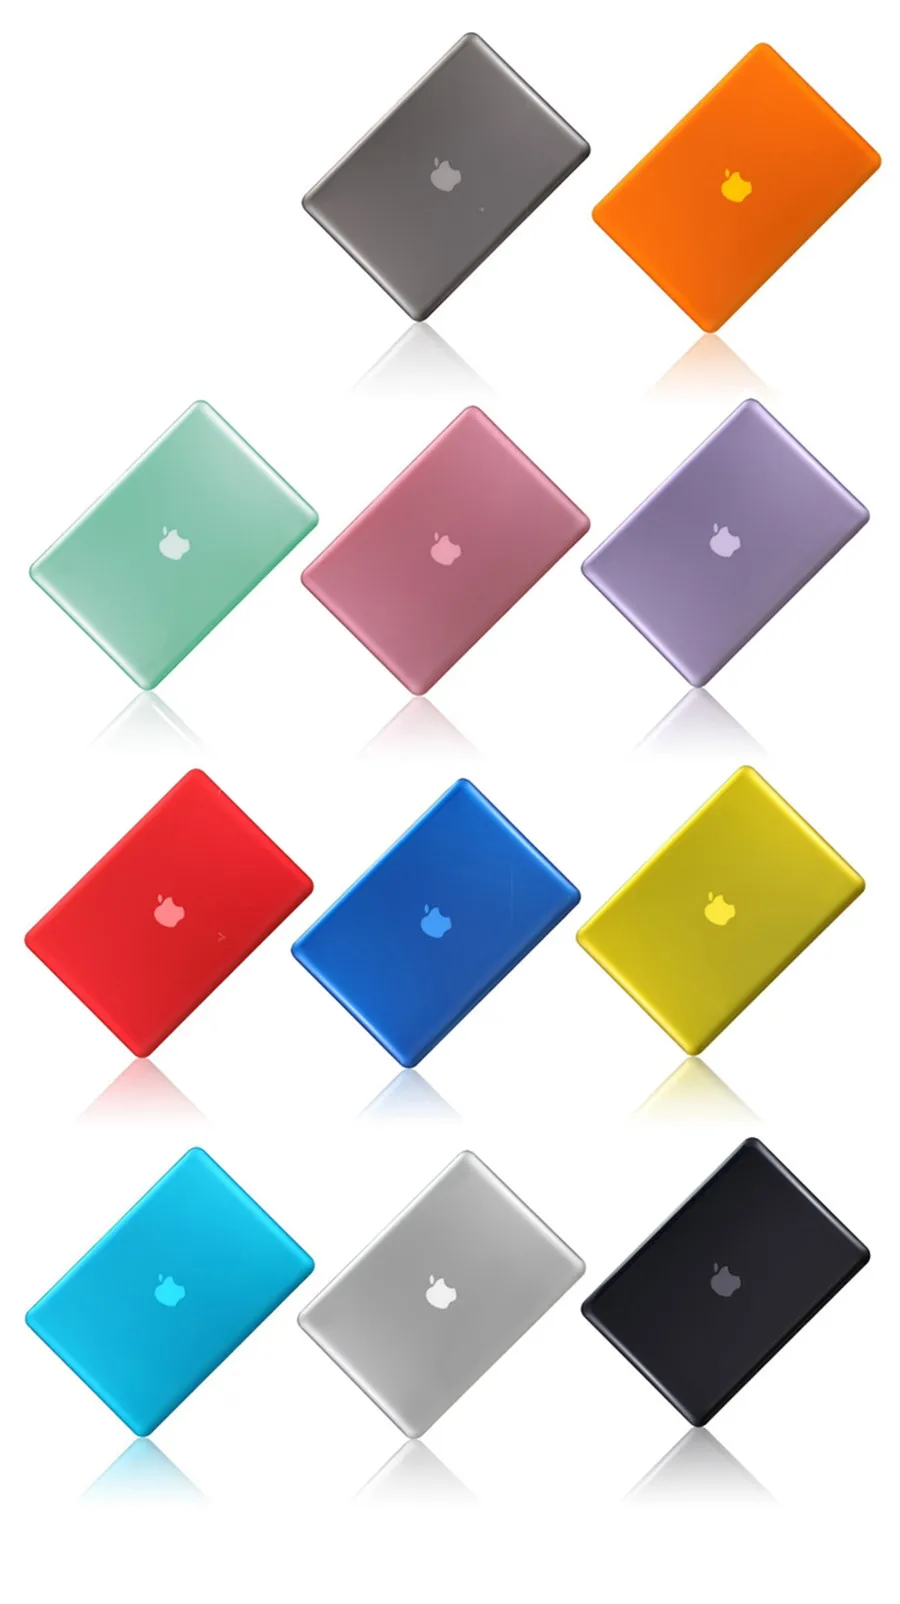 Раскошный Чехол-прозрачный кристалл чехол для ноутбука Macbook air 11, 12, 13, 15 дюймов Pro retina Защитная крышка A1706 A1708 A1707